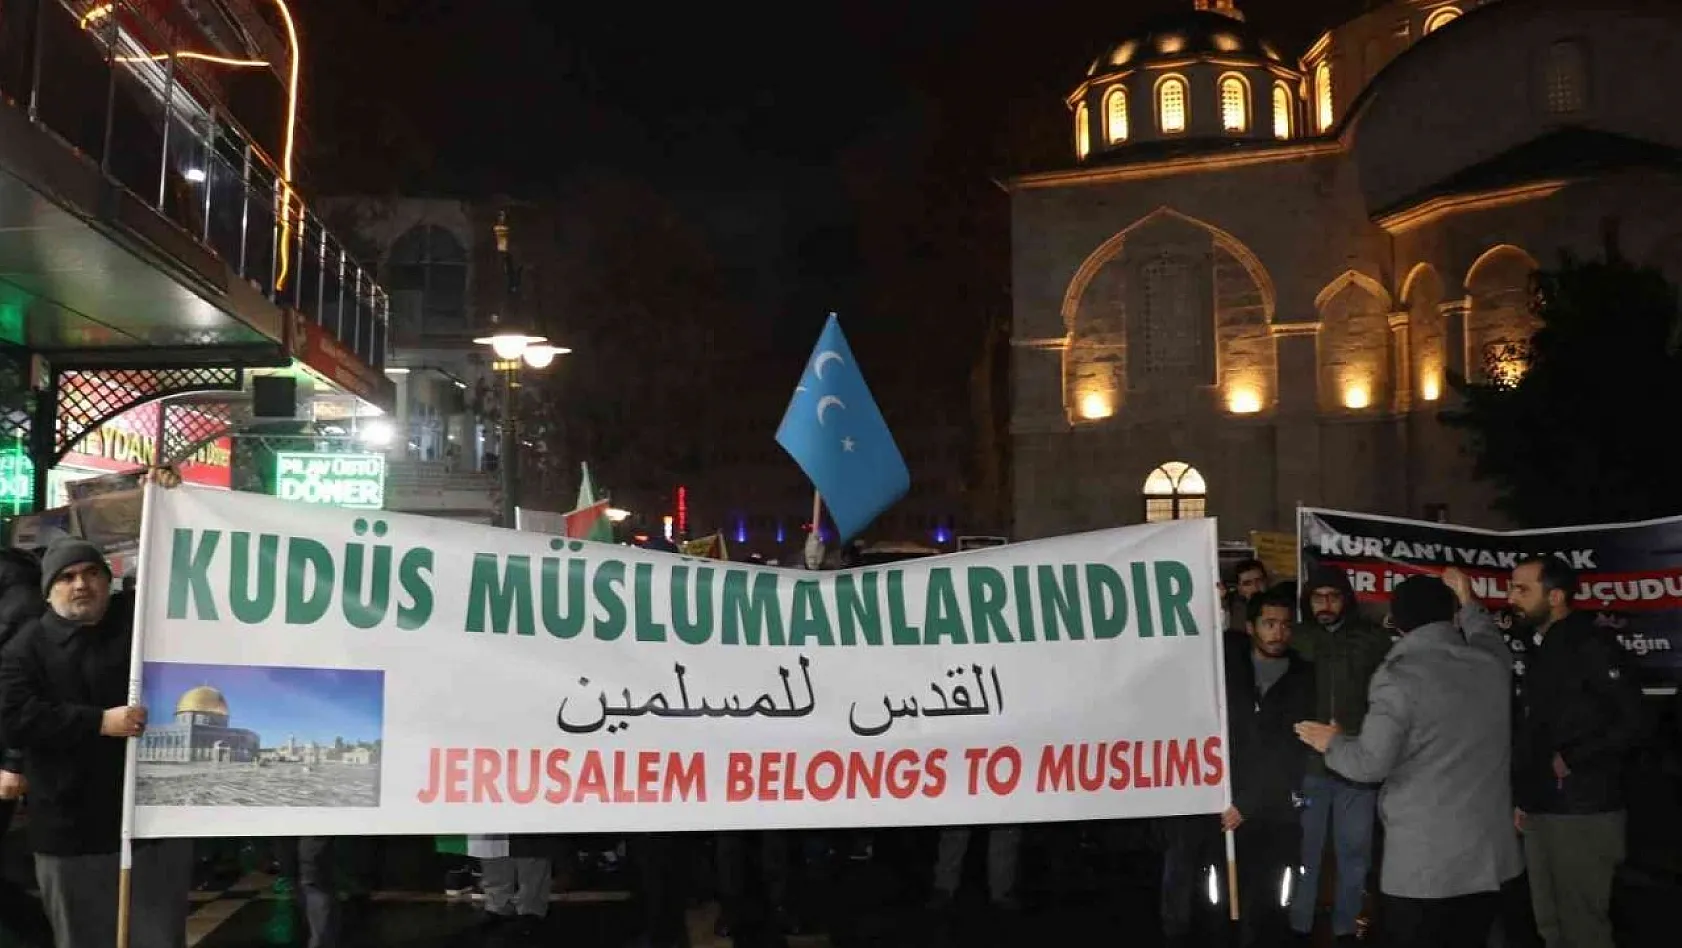 Malatyalılar Kur'an-ı Kerim yakılmasını protesto için yürüdü